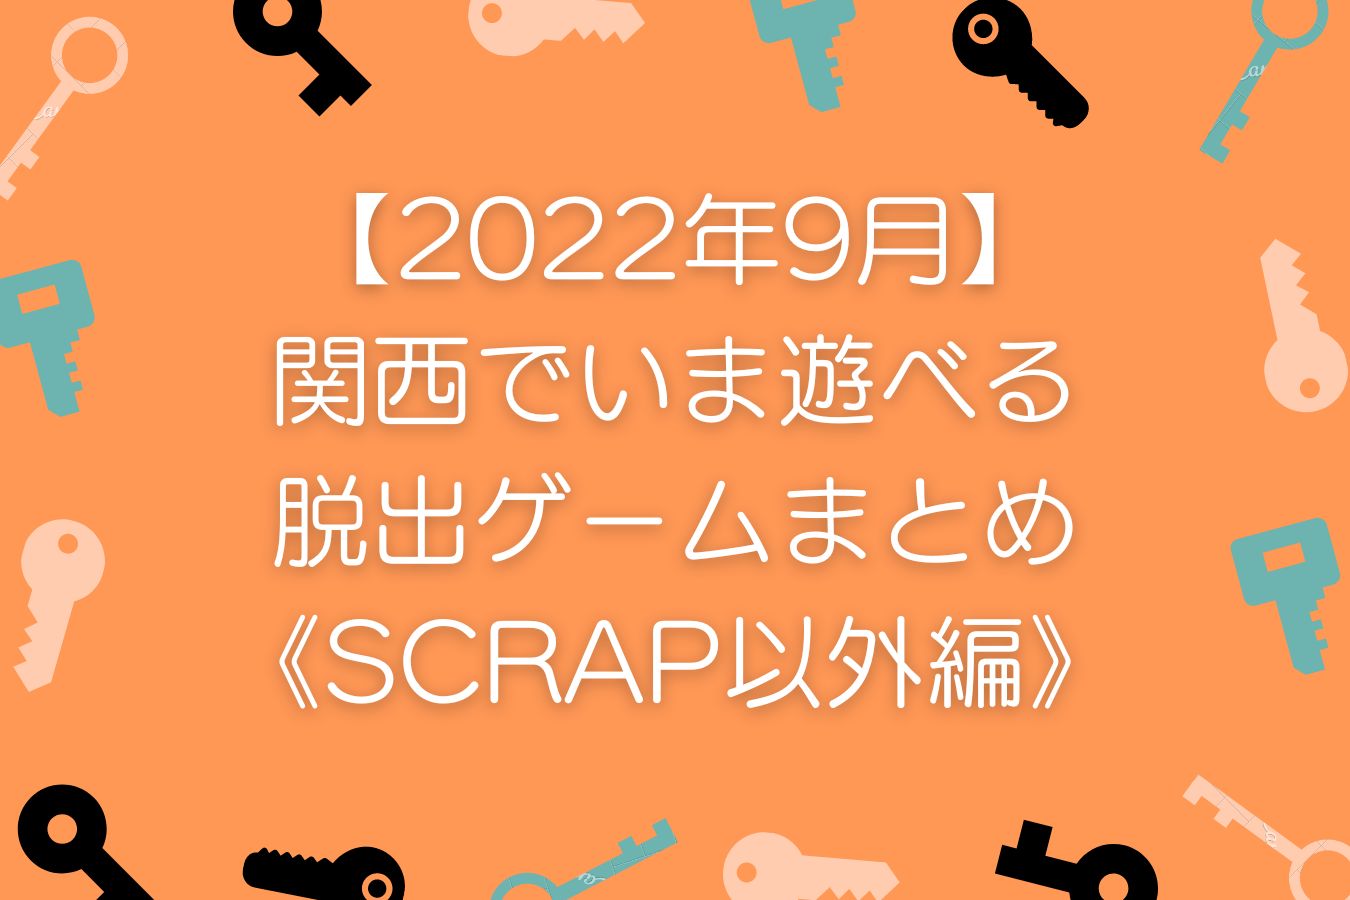 【2022年9月】-関西でいま遊べる-リアル脱出ゲームまとめ-《SCRAP以外編》